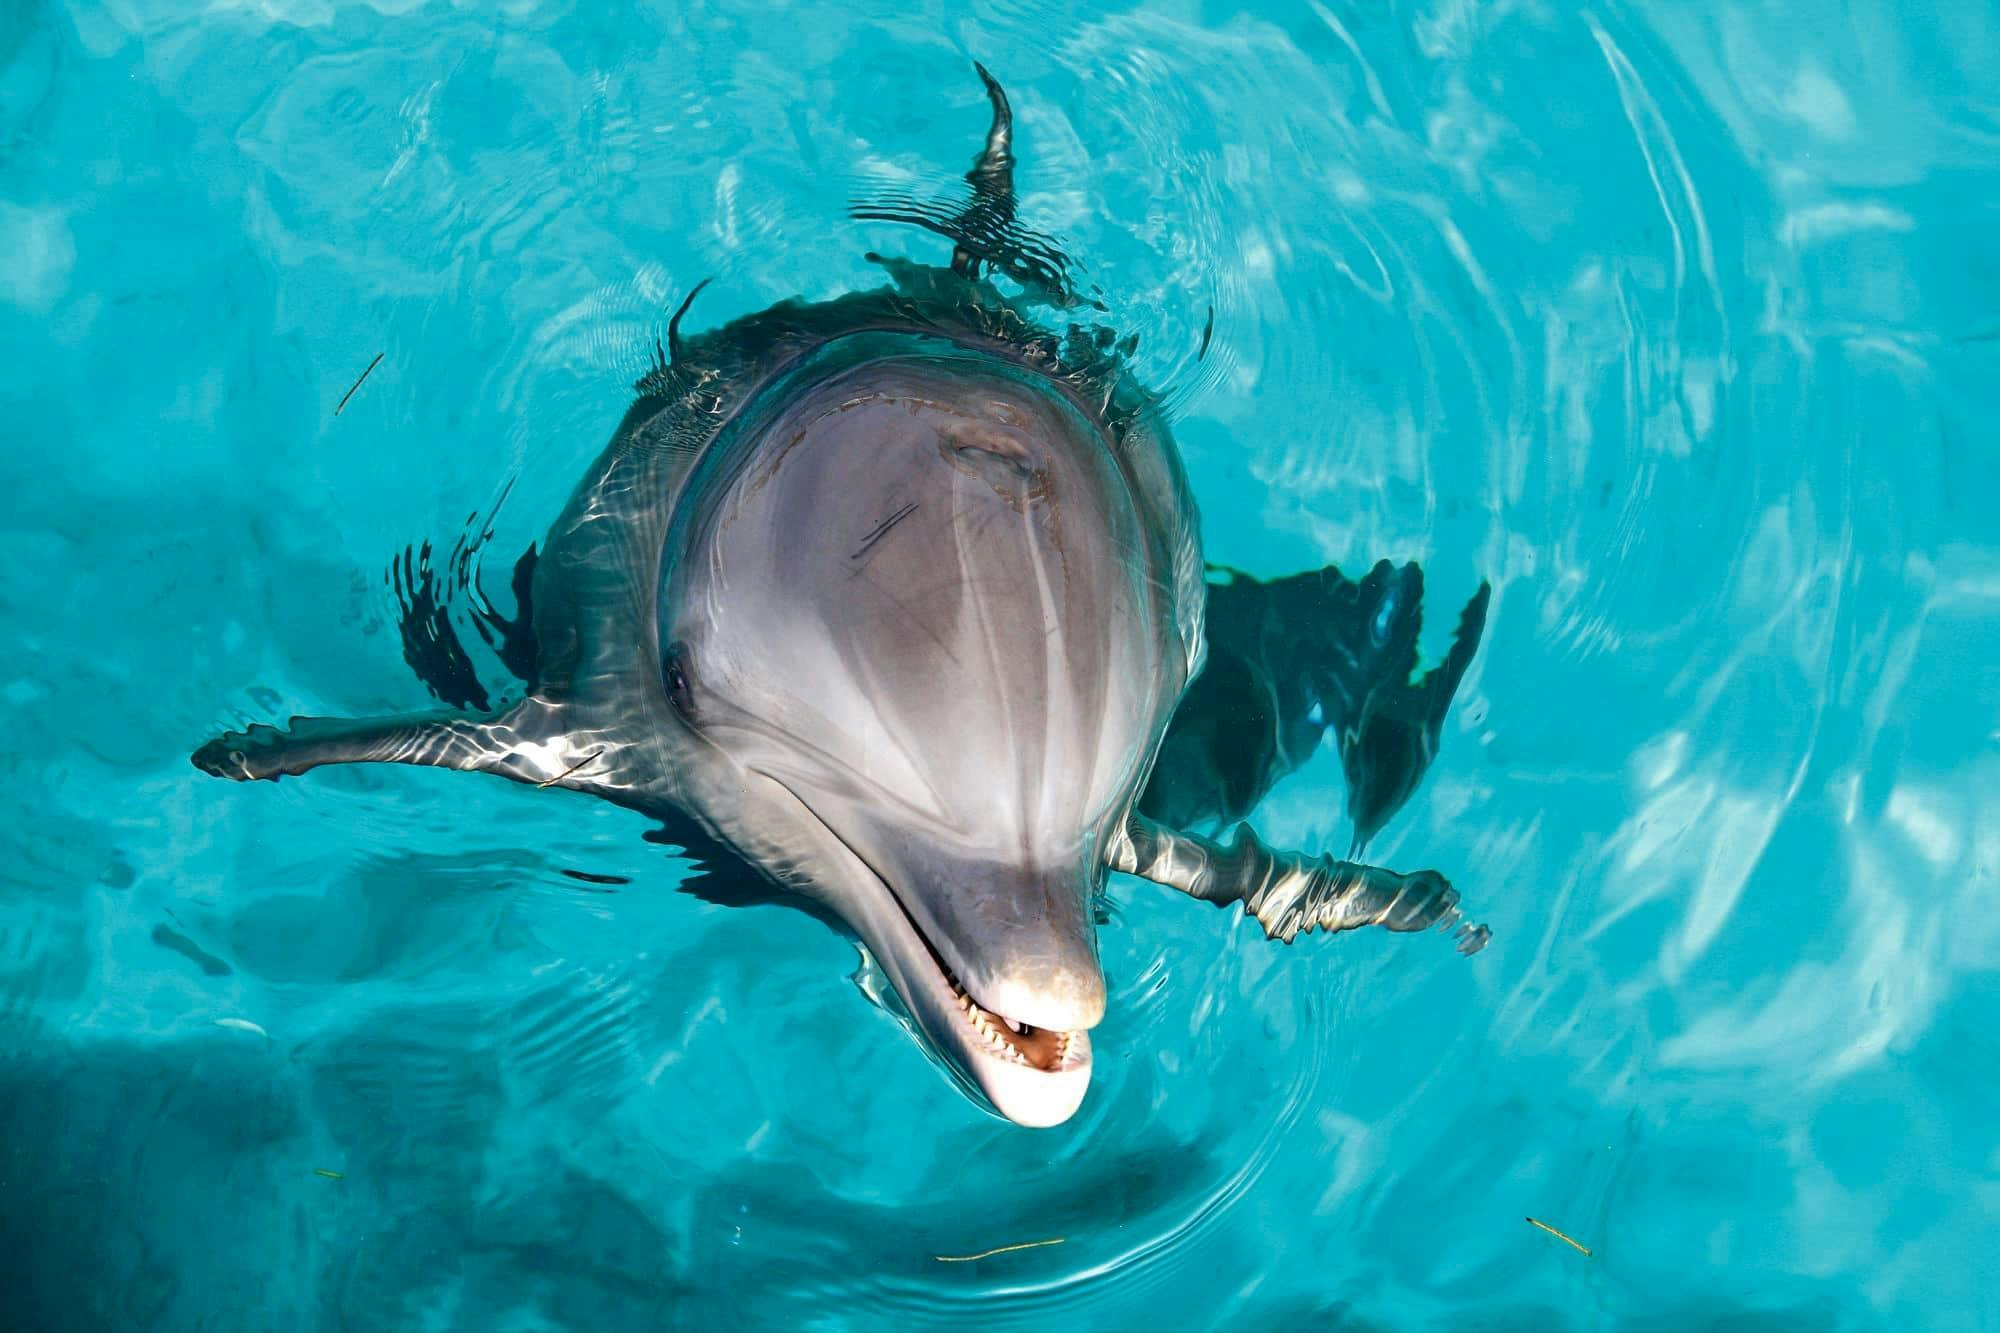 Biglietto VIP per il Parco della Barriera Corallina e l'esperienza con i delfini